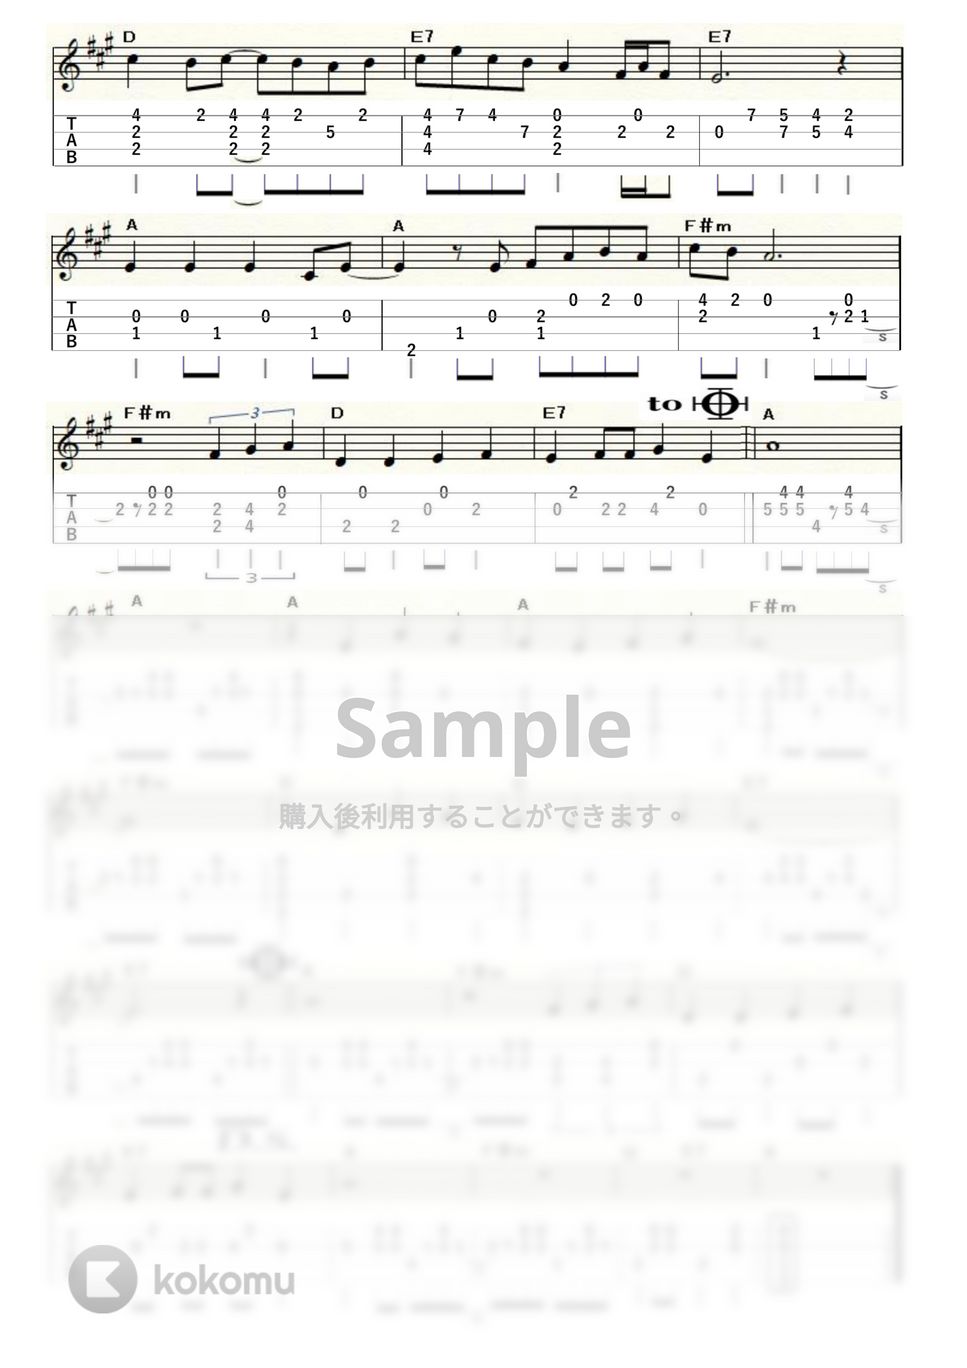 荒井由実 - ルージュの伝言 (ｳｸﾚﾚｿﾛ / Low-G / 上級) by ukulelepapa